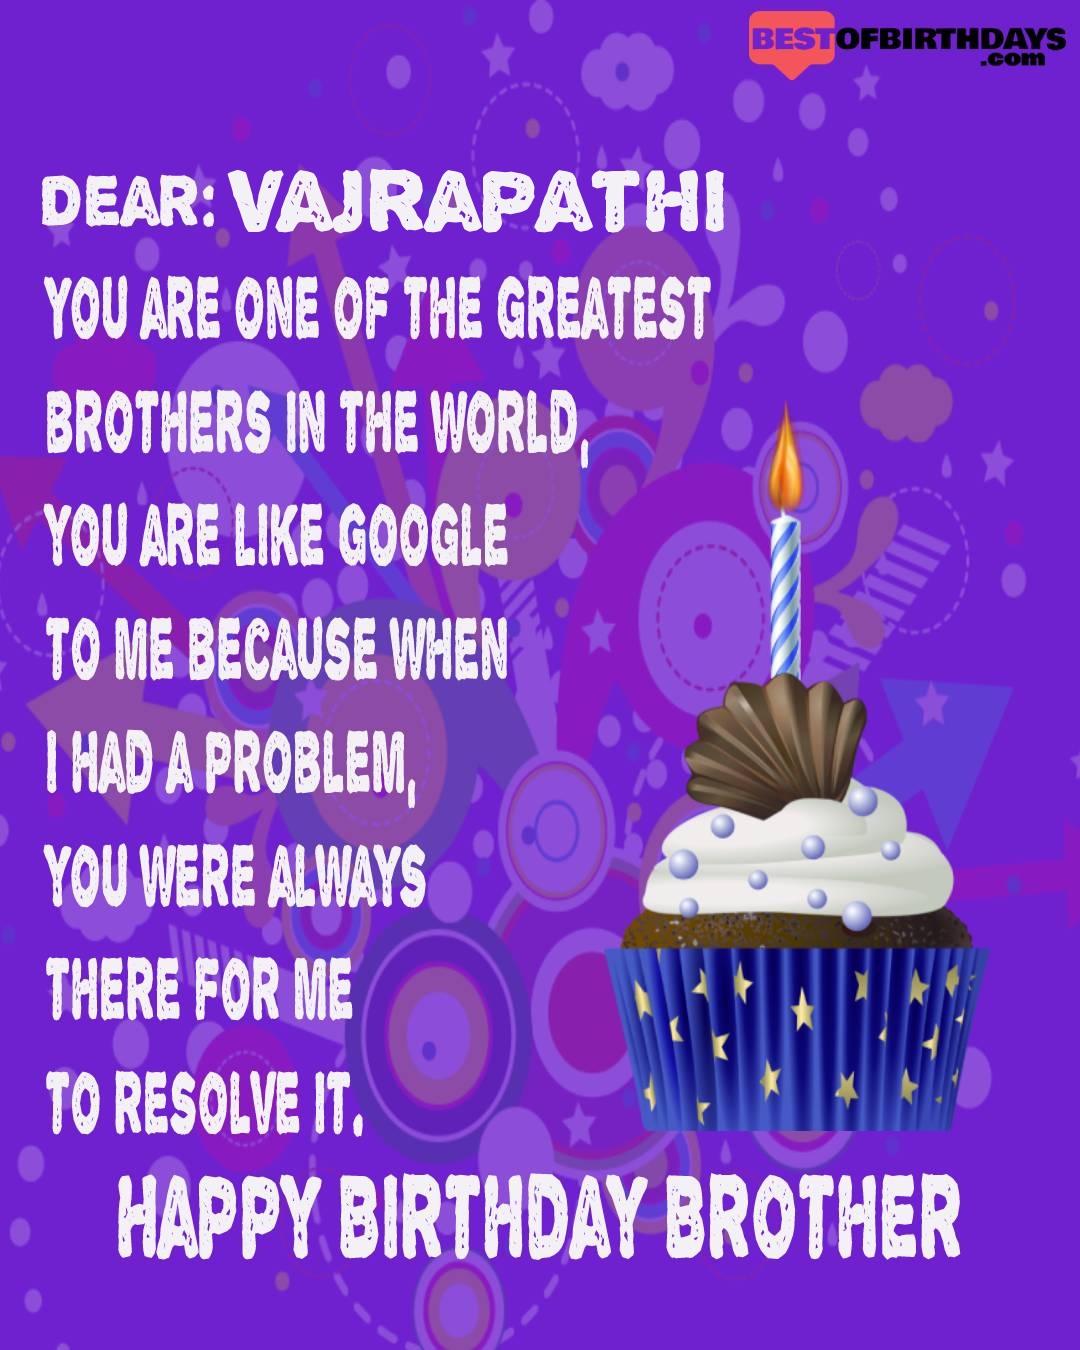 Happy birthday vajrapathi bhai brother bro